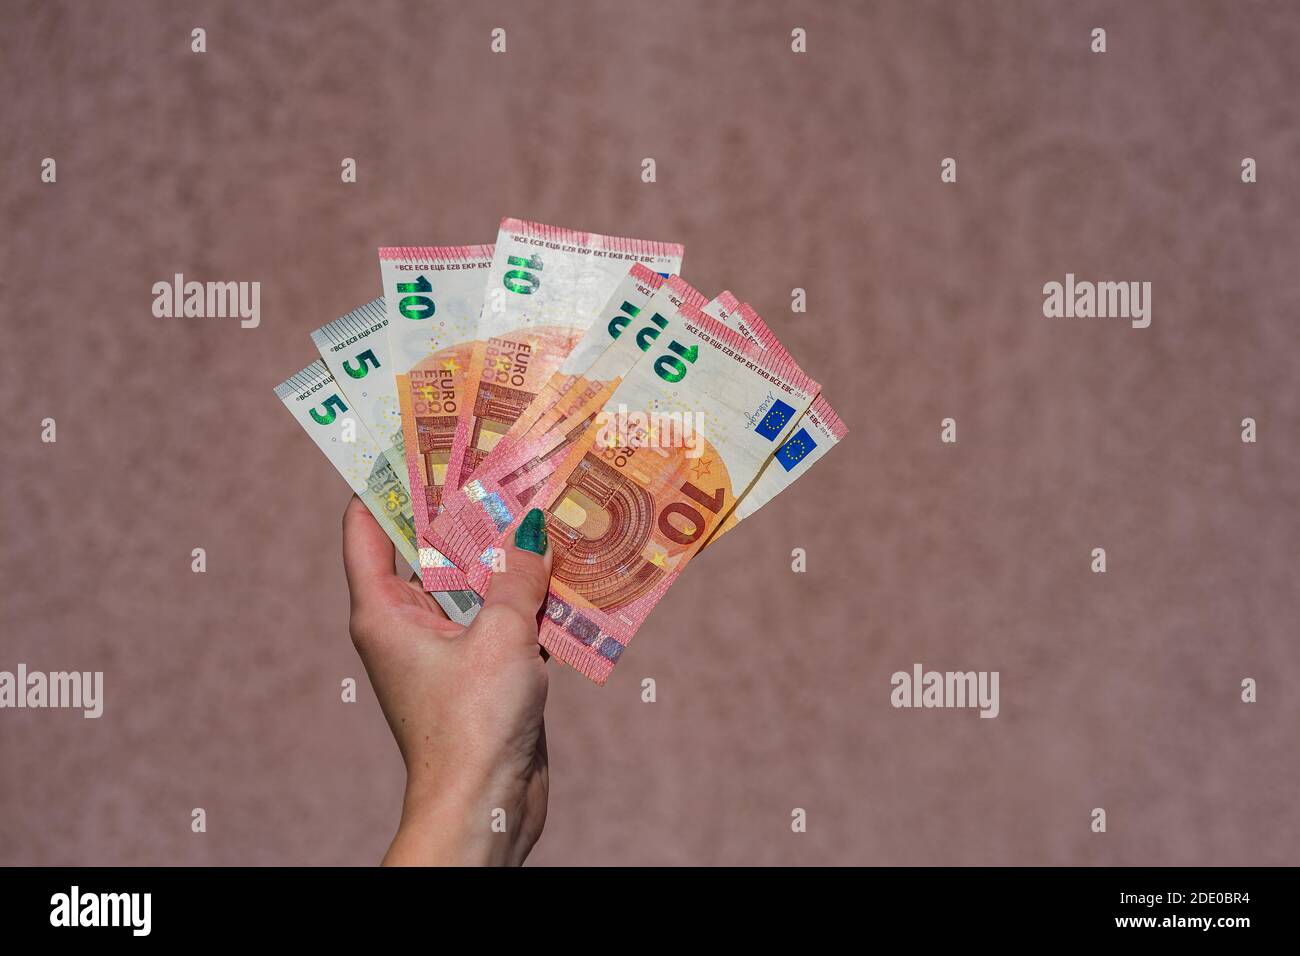 Banconota da 5 euro immagini e fotografie stock ad alta risoluzione - Alamy